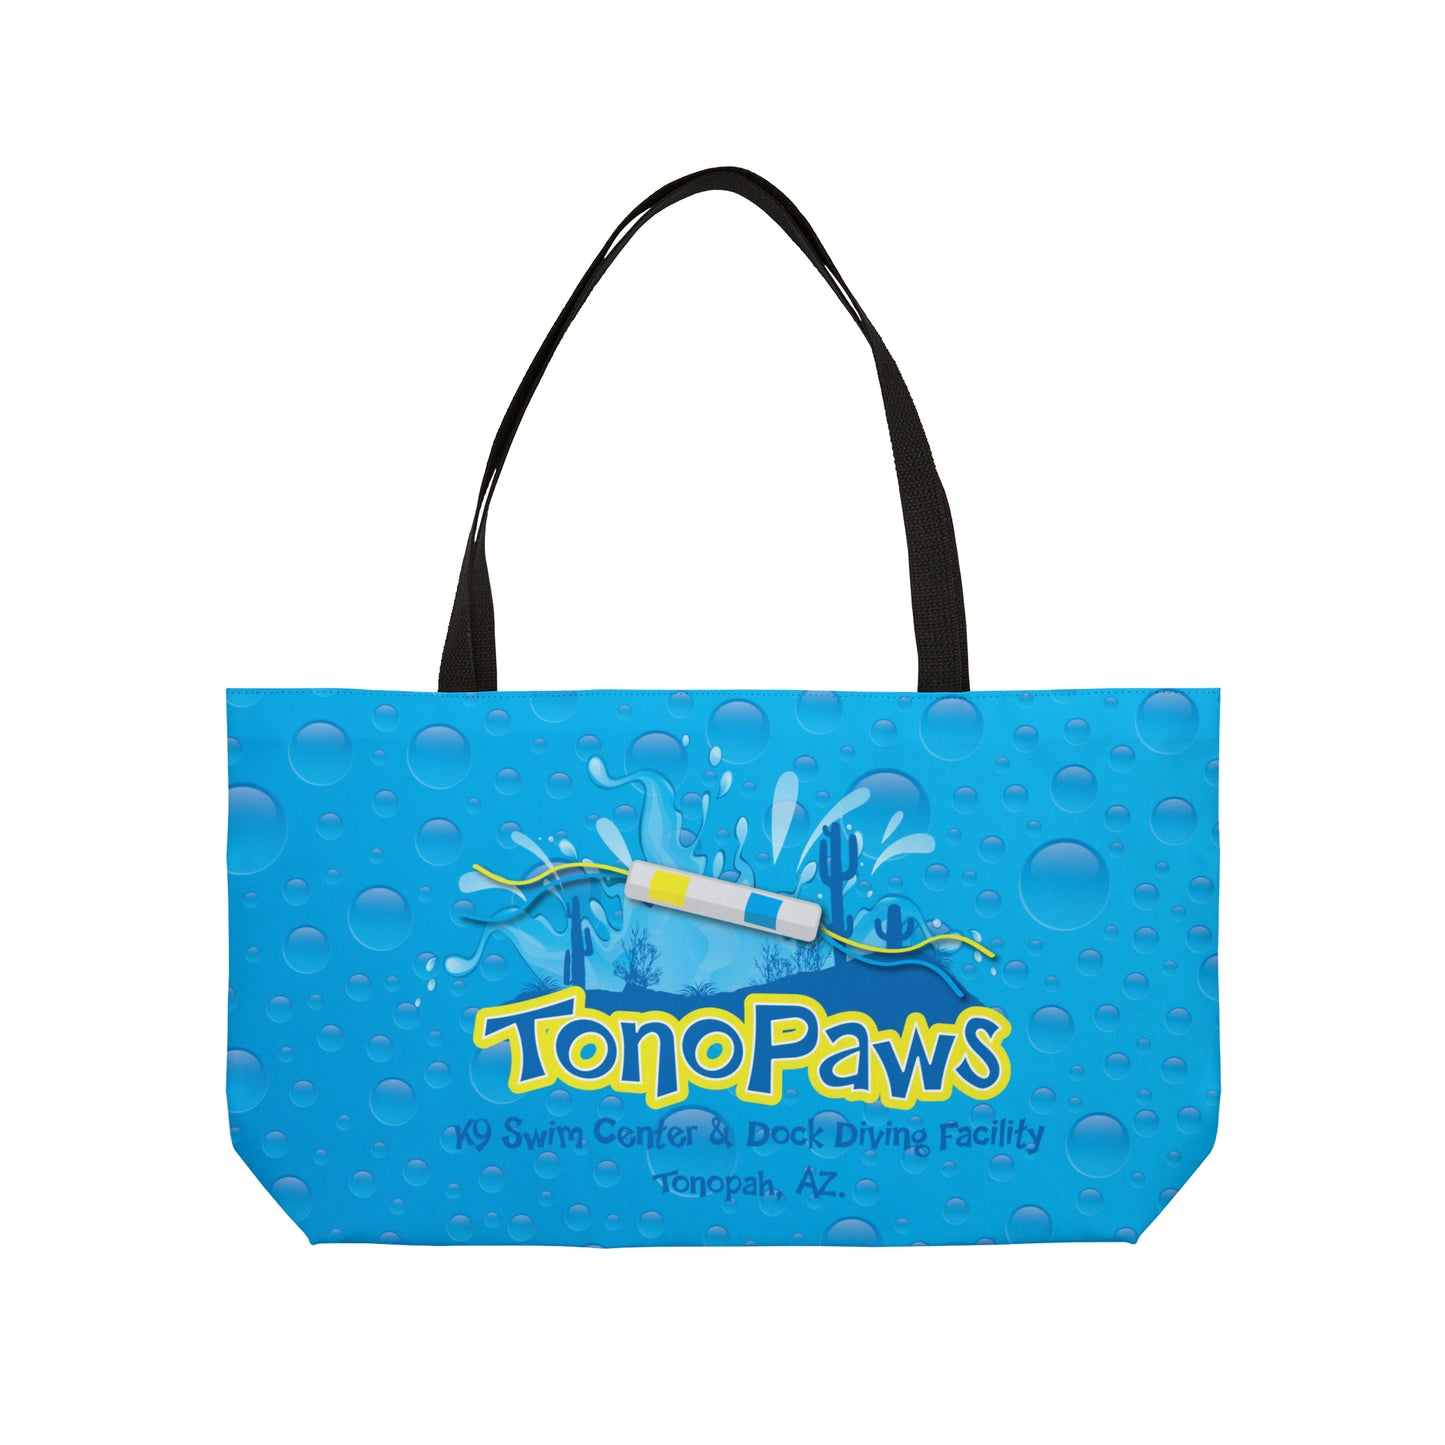 TONOPAWS Weekender Tote Bag